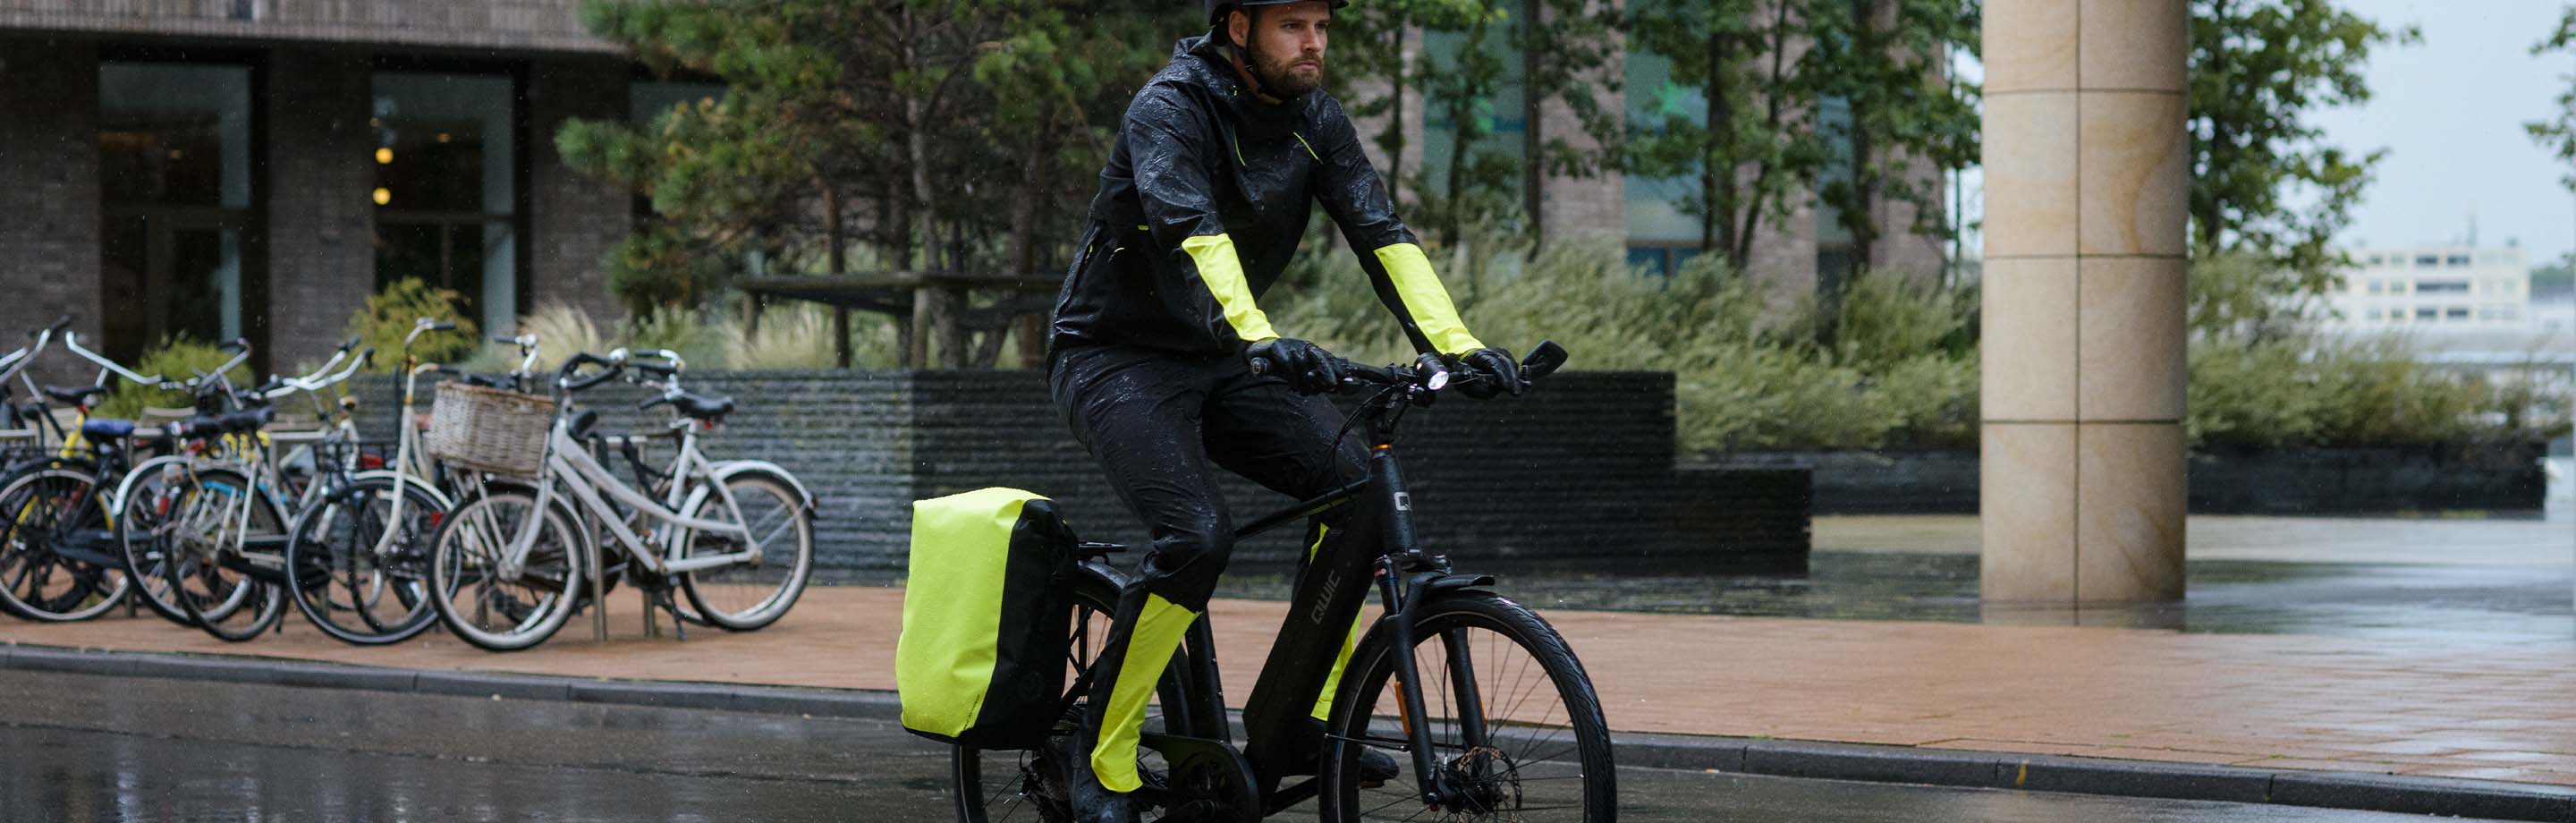 AGU – Hochwertige Radsportbekleidung & Fahrradtaschen für jede Gelegenheit